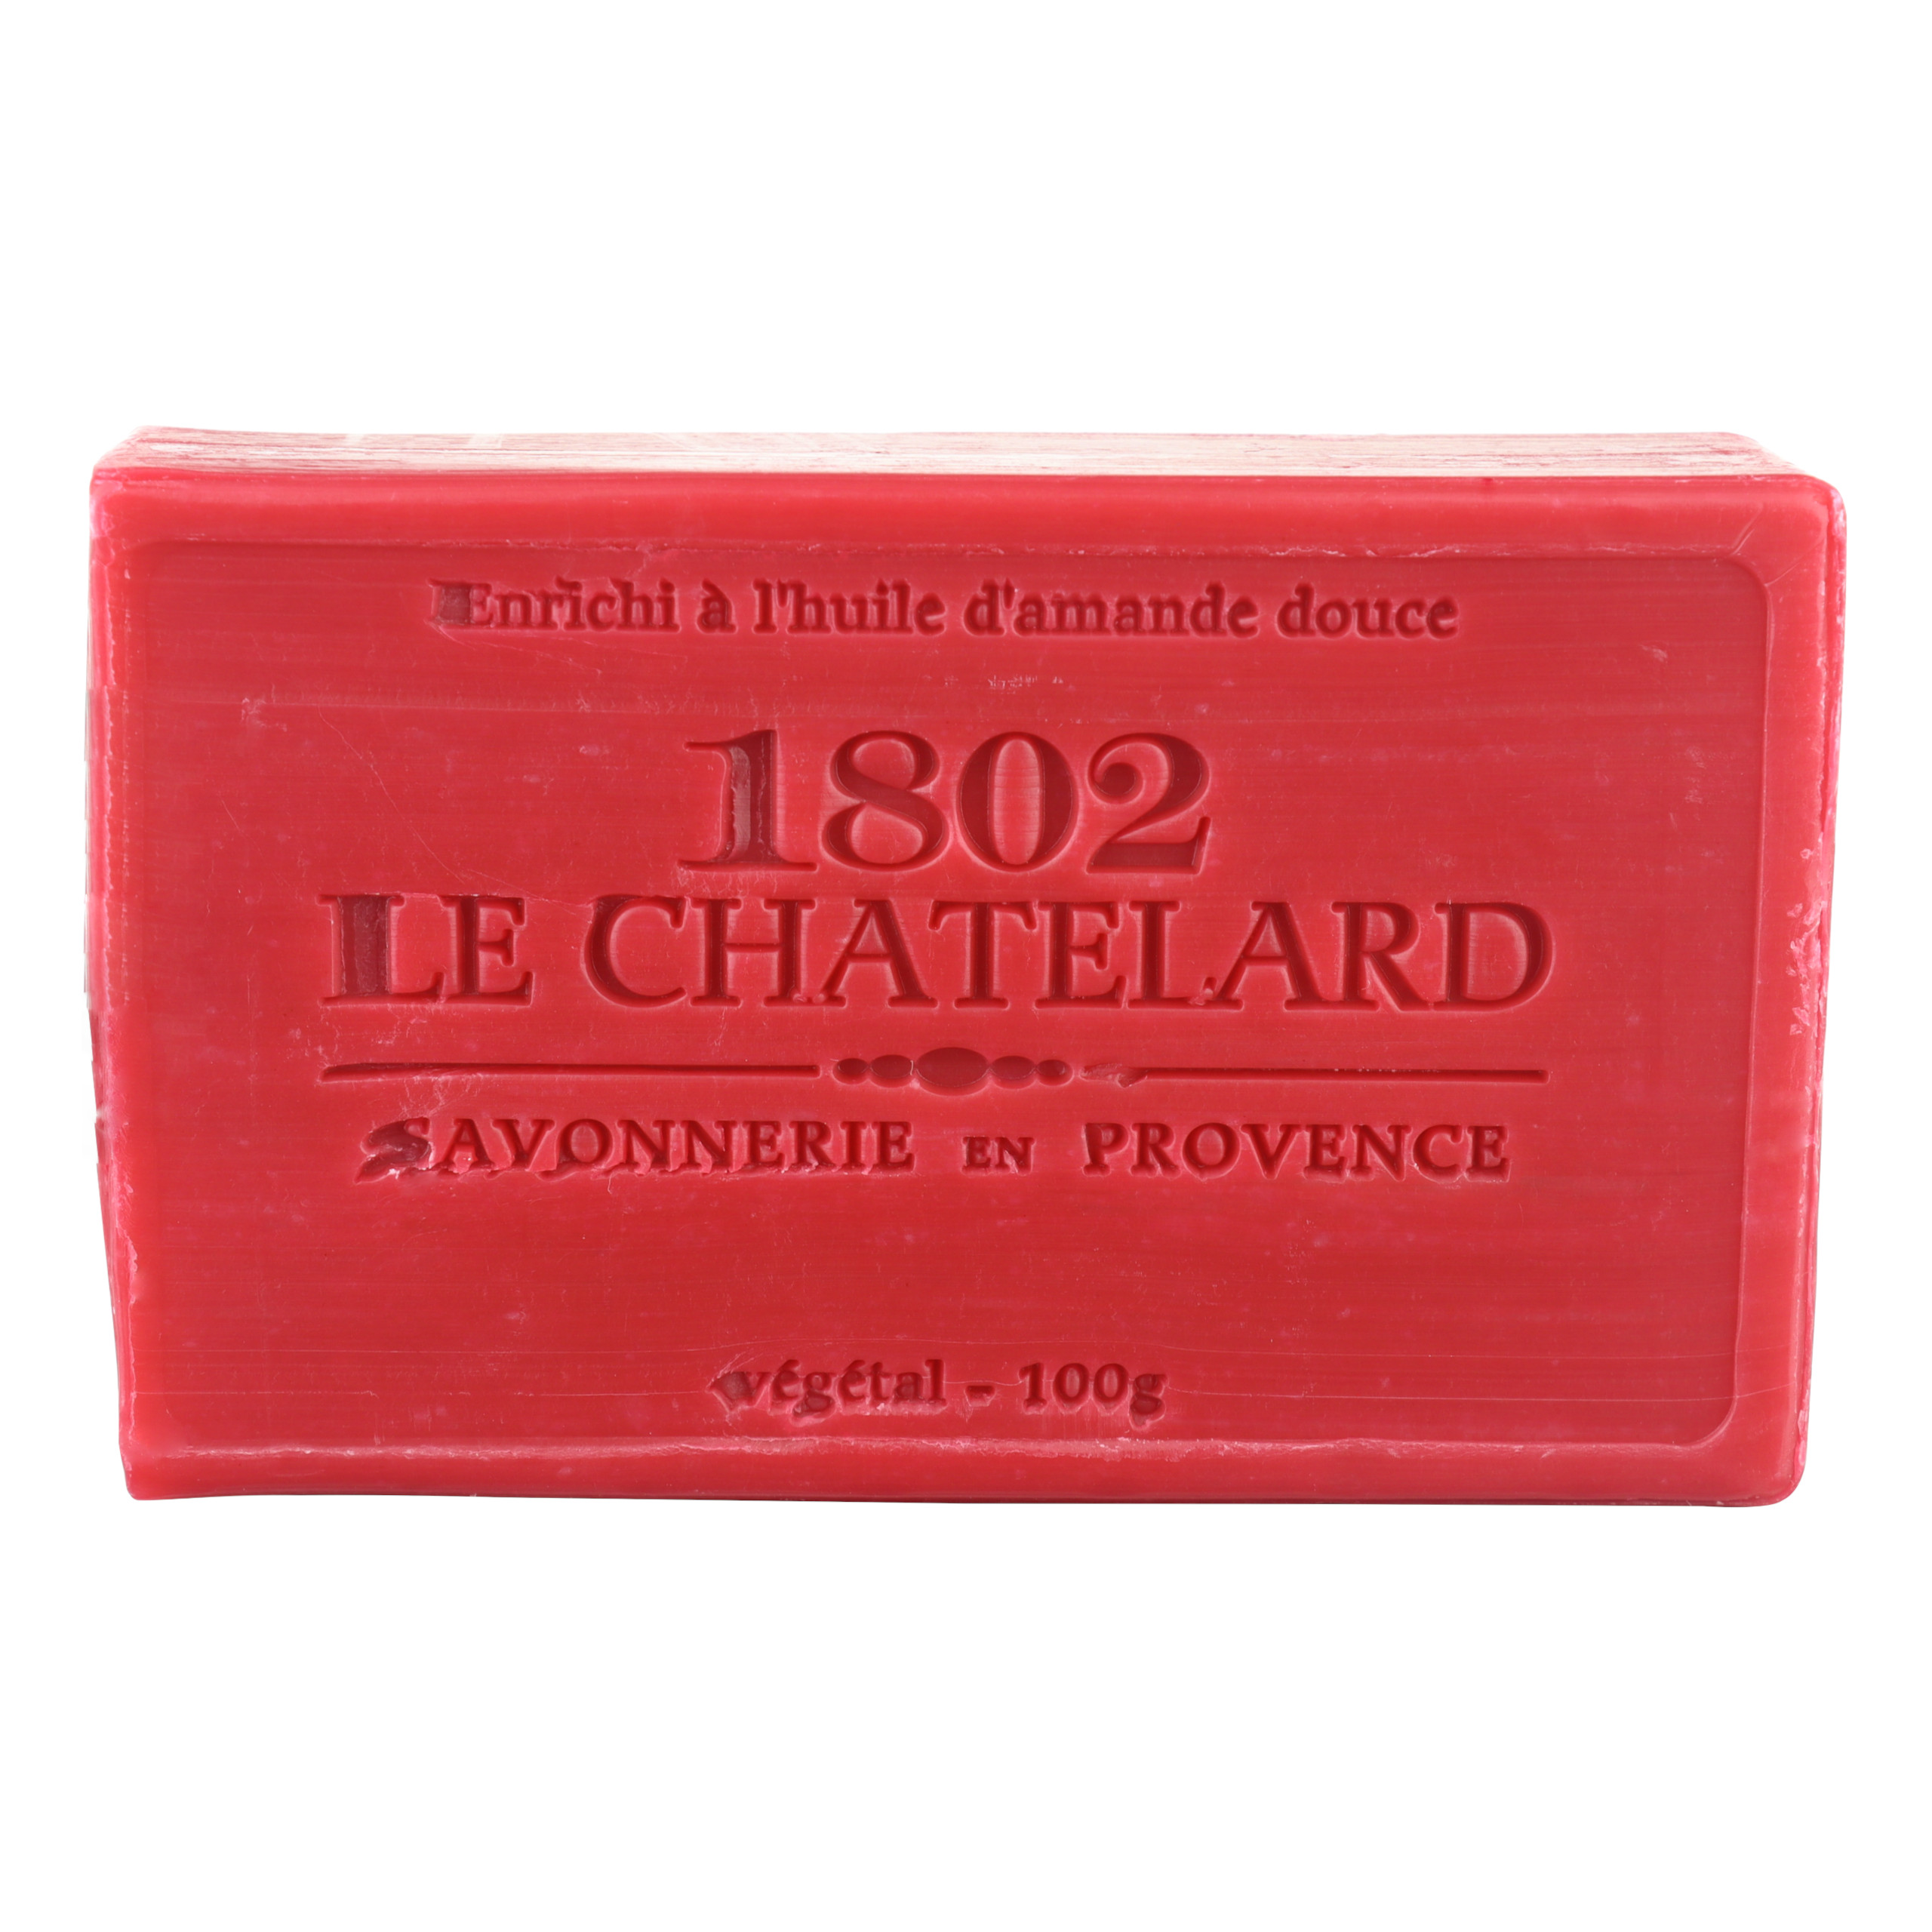 Mydło marsylskie Wiśnia 100g Le Chatelard 1802